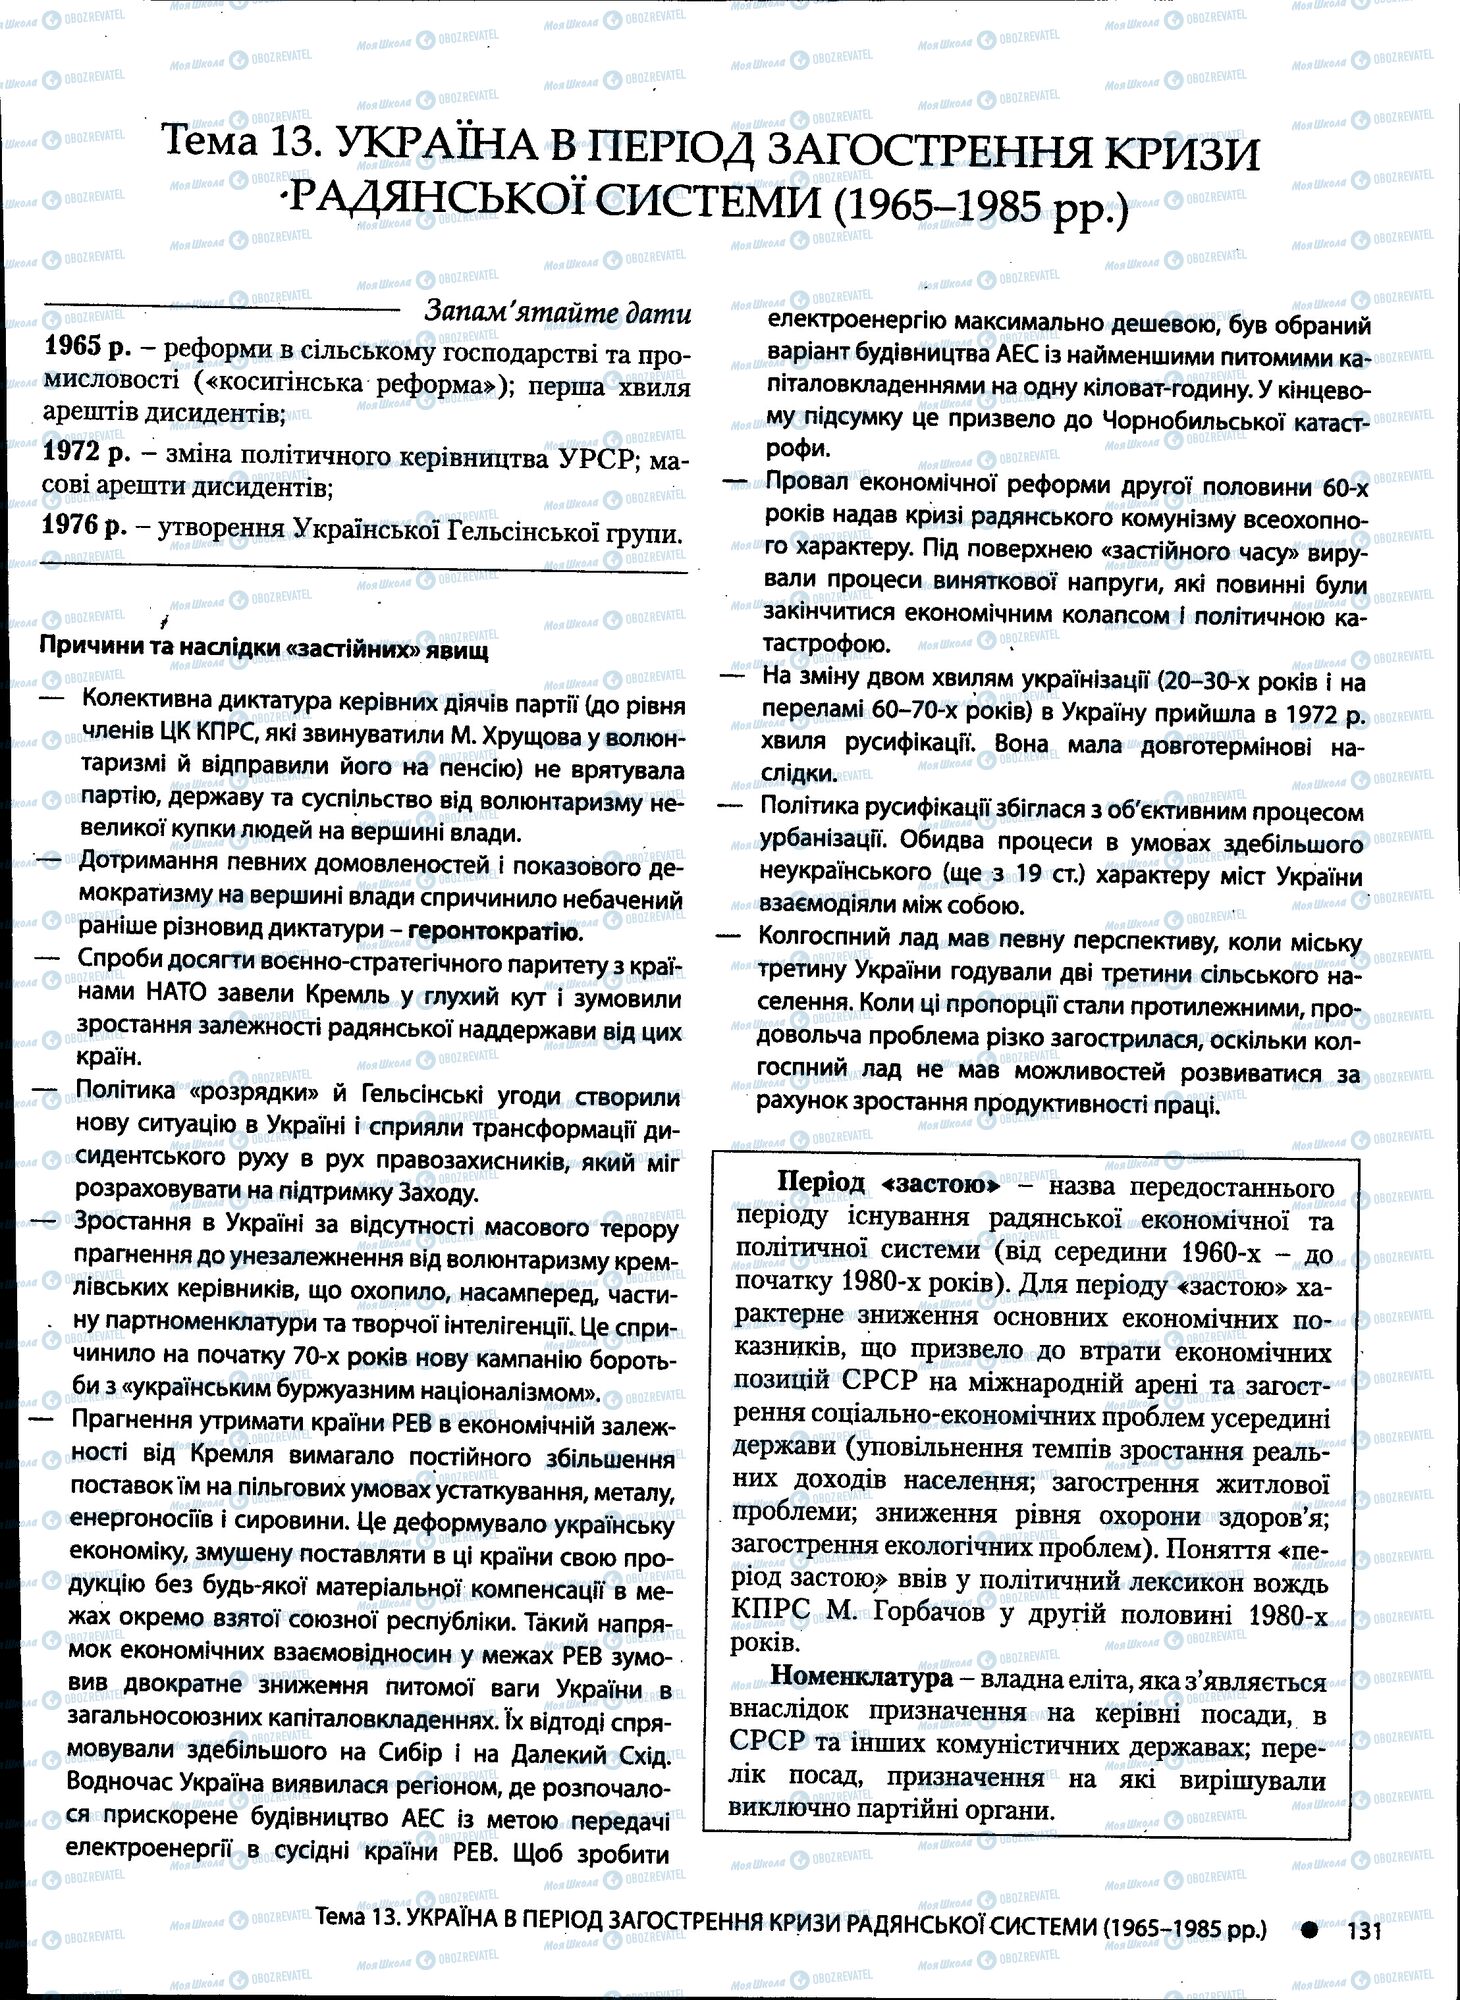 ДПА История Украины 11 класс страница 131